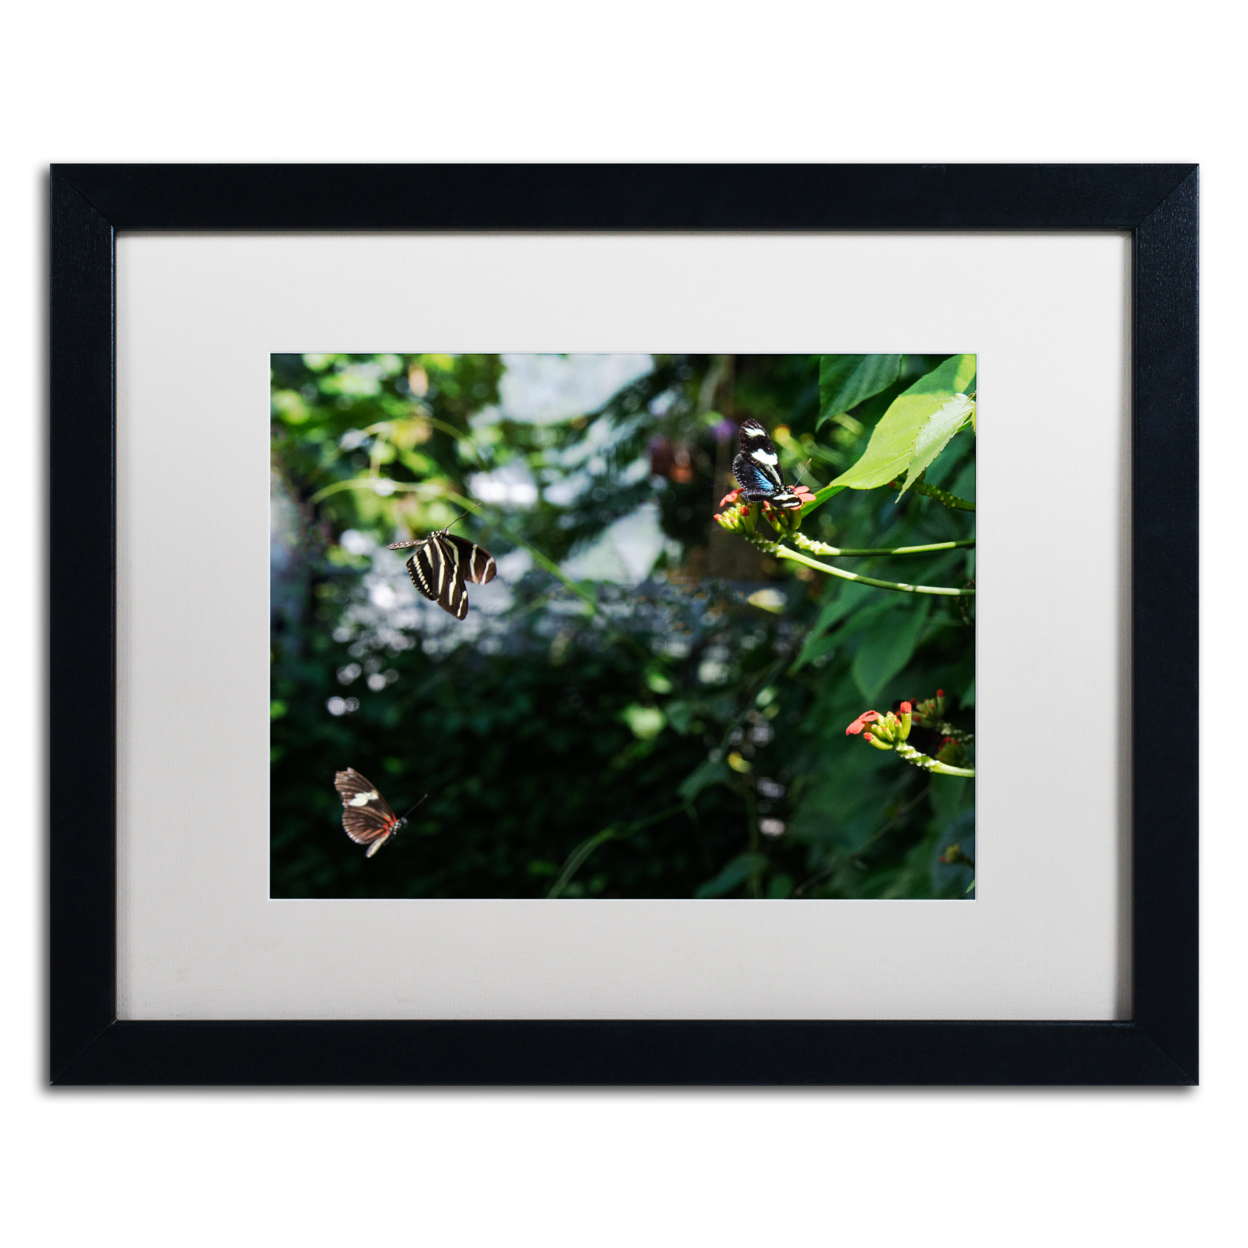 Kurt Shaffer 'Butterflies In Flight' Black Wooden Framed Art 18 X 22 Inches